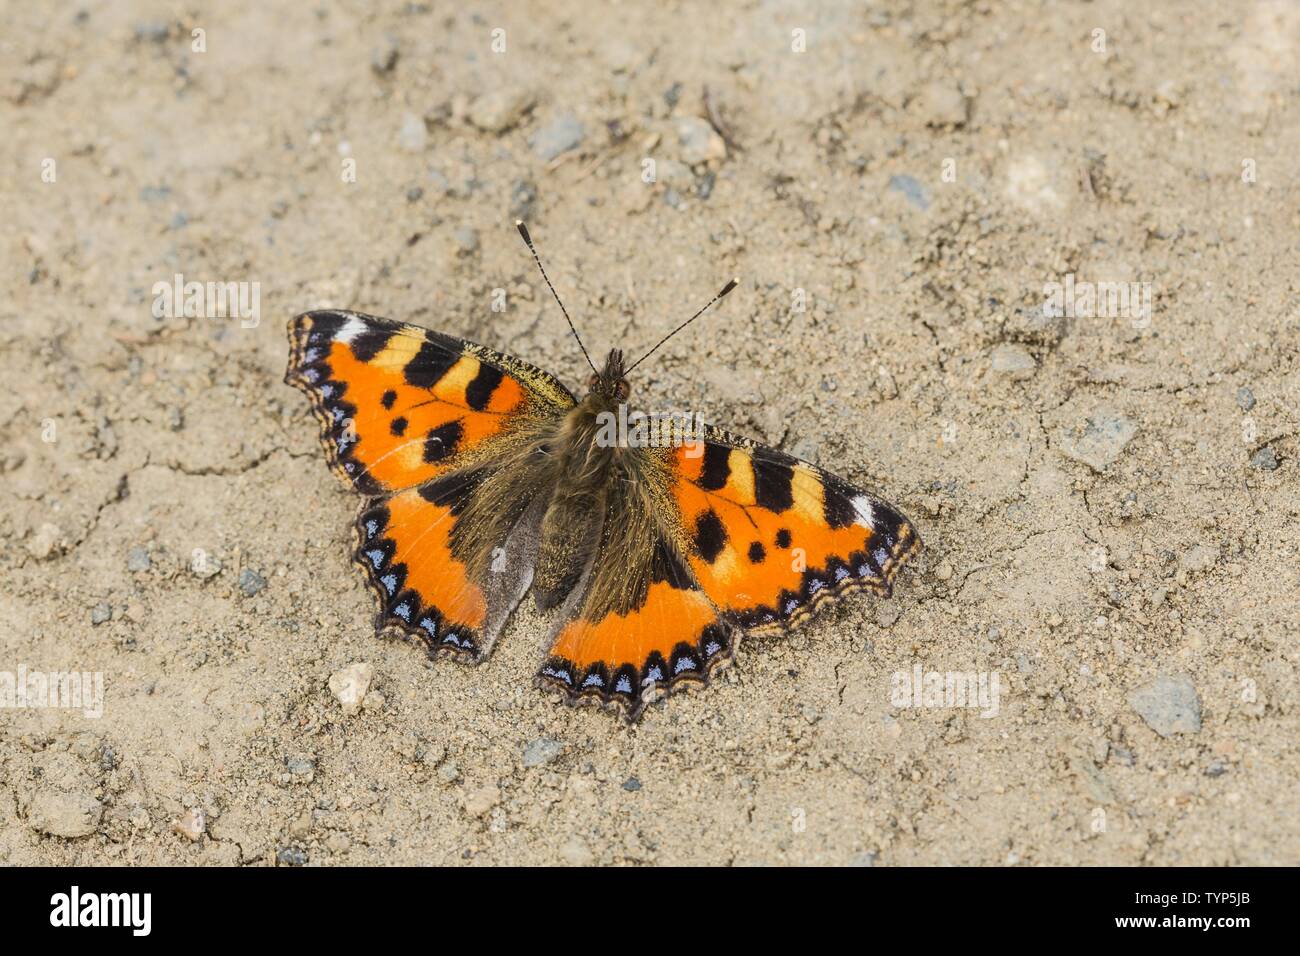 La petite écaille de papillon, un papillon coloré orange rougeâtre avec des taches bleu et noir, assis sur un sol sec par beau jour d'été. Banque D'Images